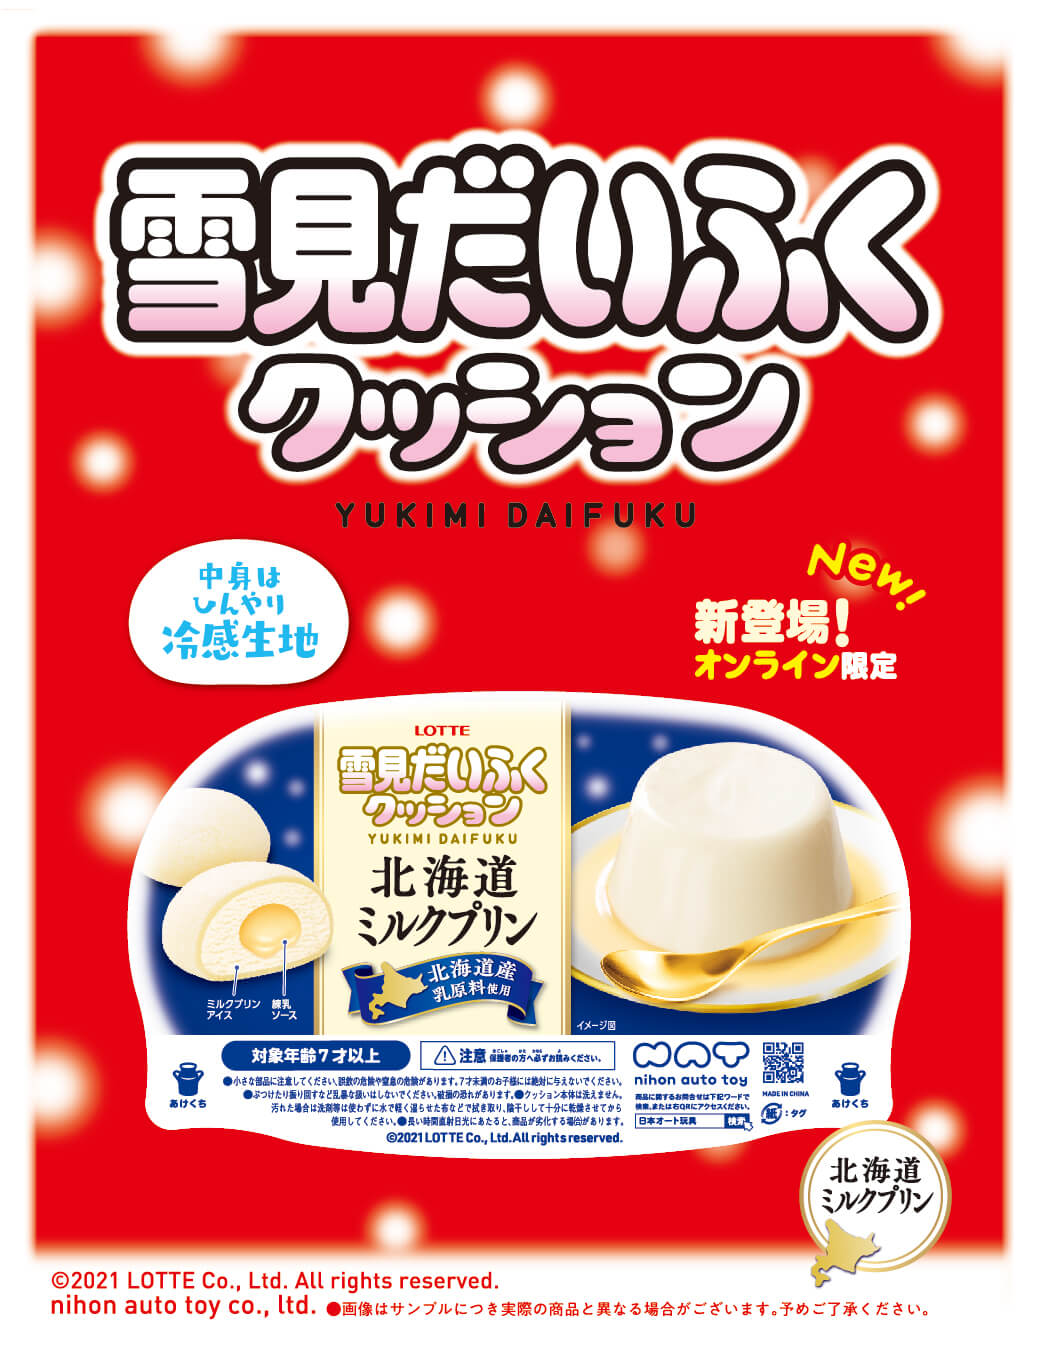 プリン 雪見 ミルク だ いふく 雪見だいふく新商品【北海道ミルクプリン】の発売日や値段・内容量を調査